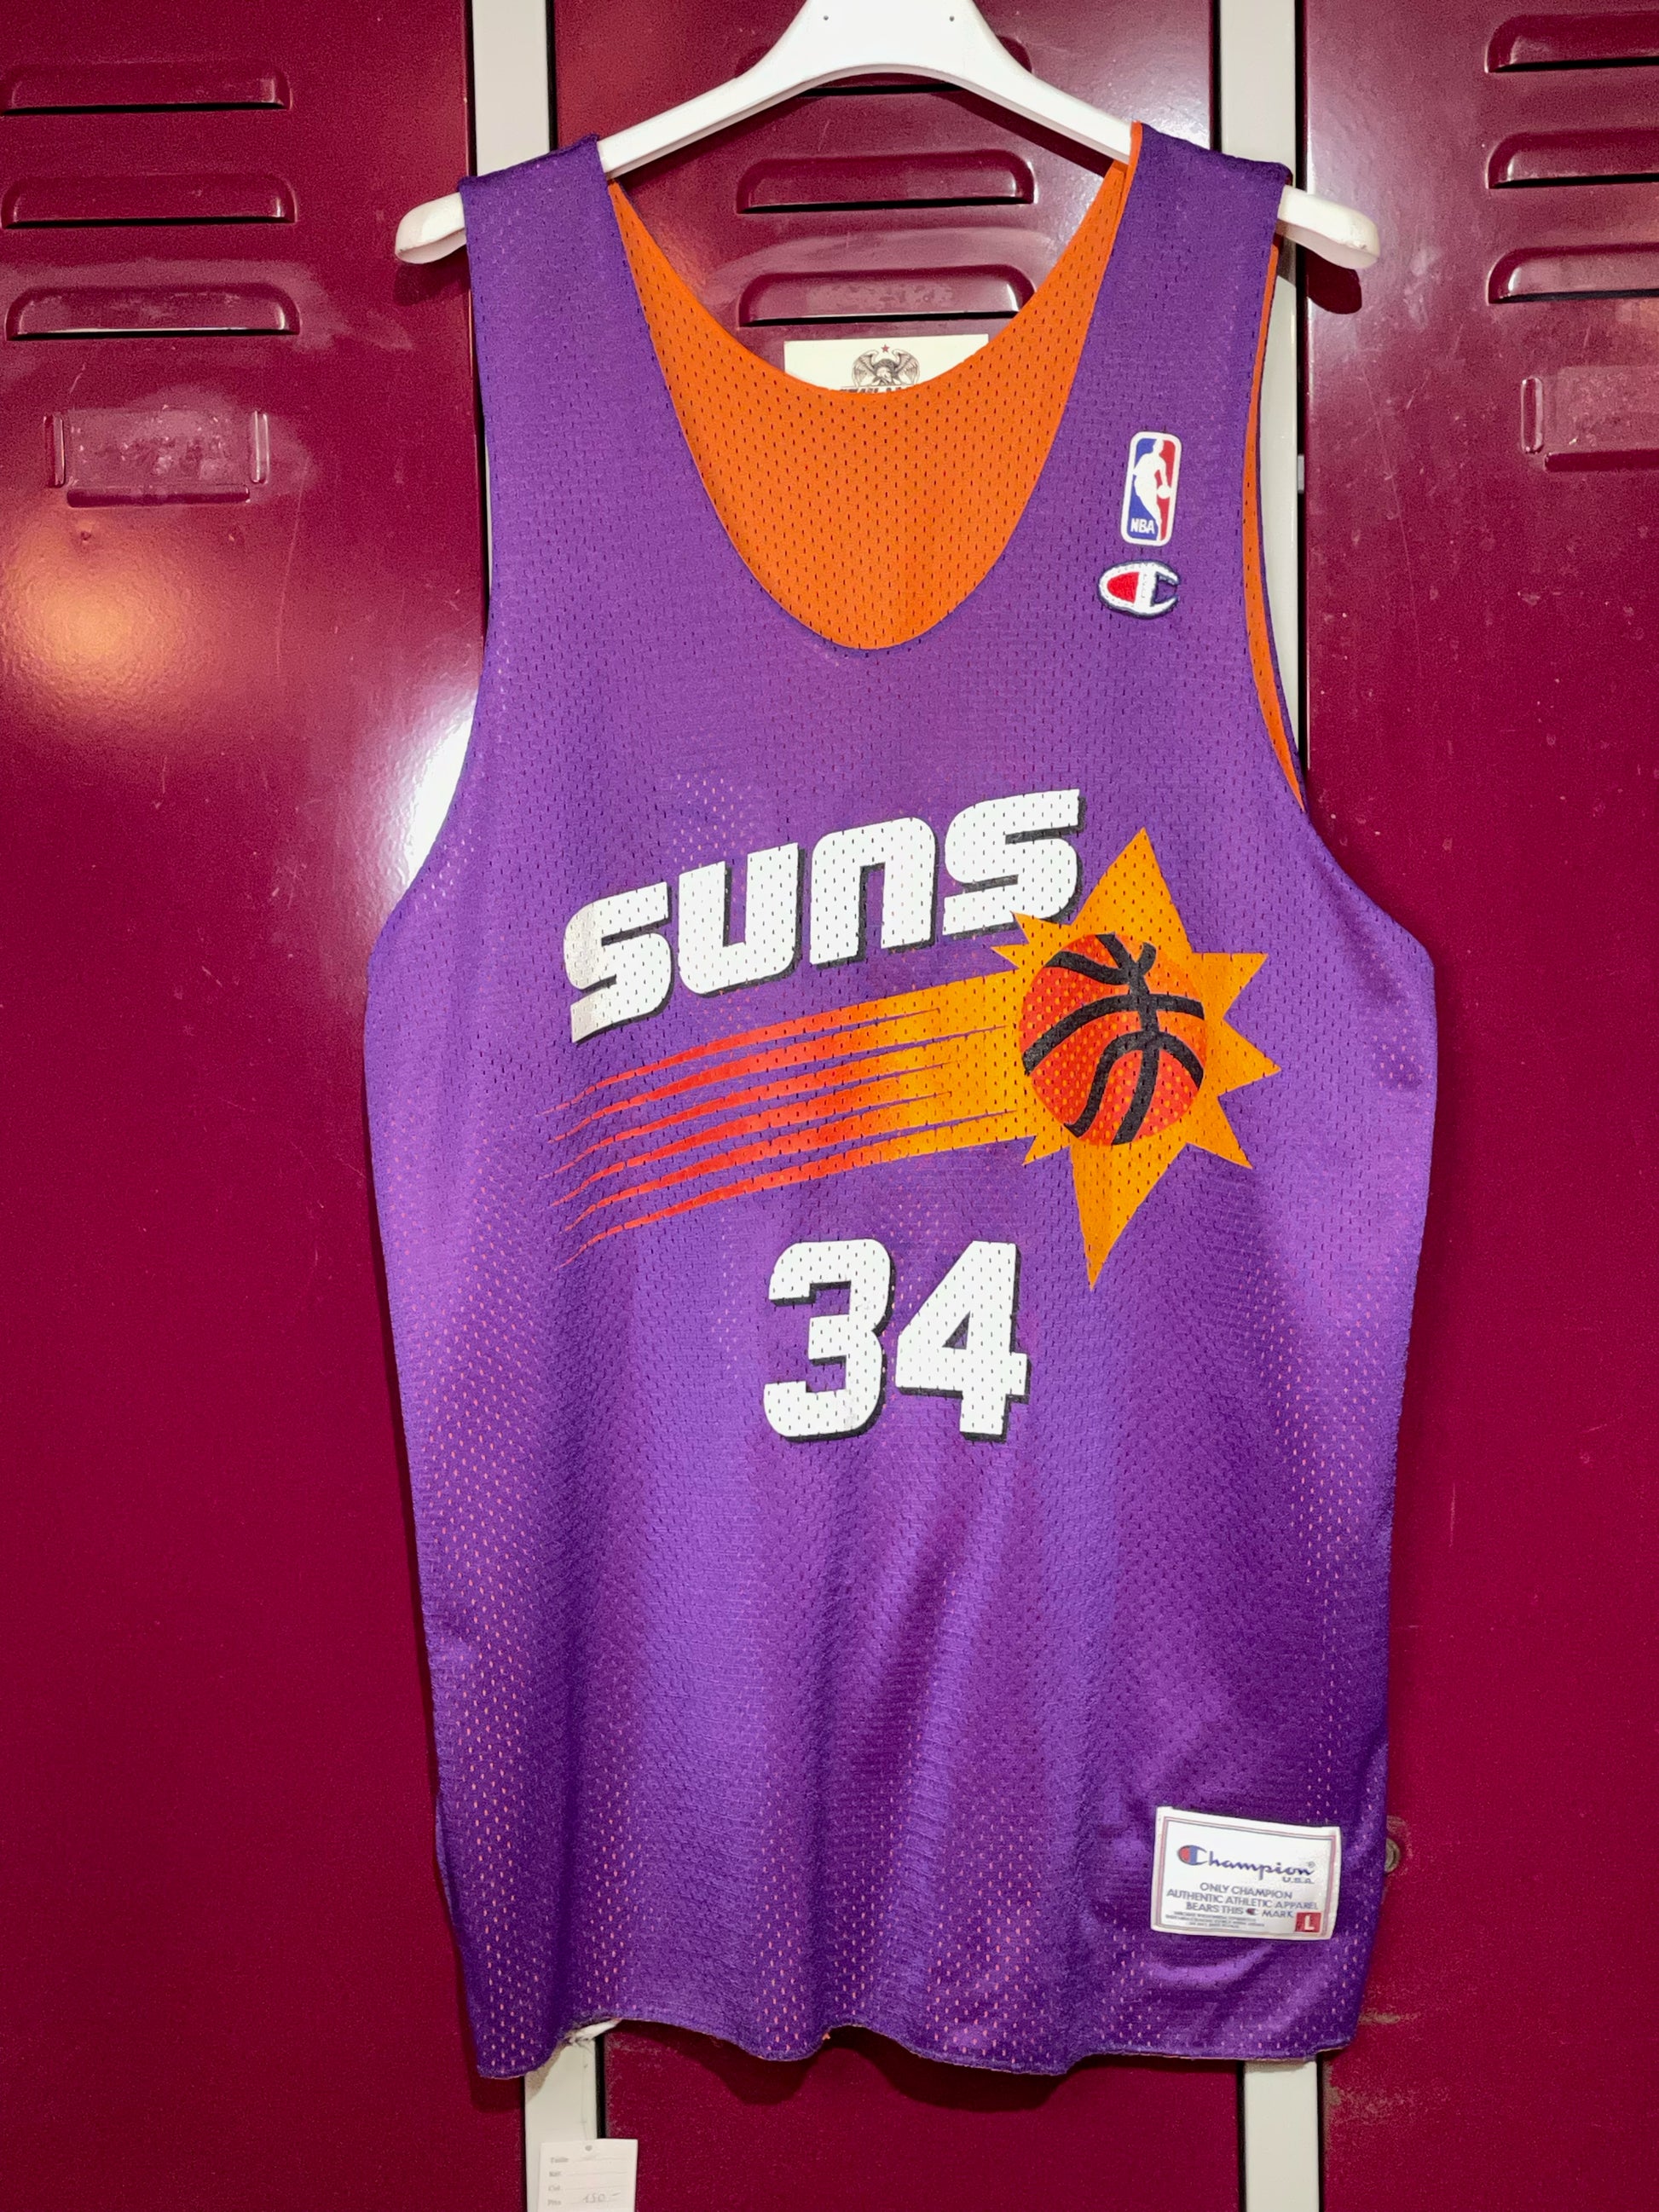 SRELIX - Phoenix Suns x Louis Vuitton - cop or drop? 🔥 // NBA x